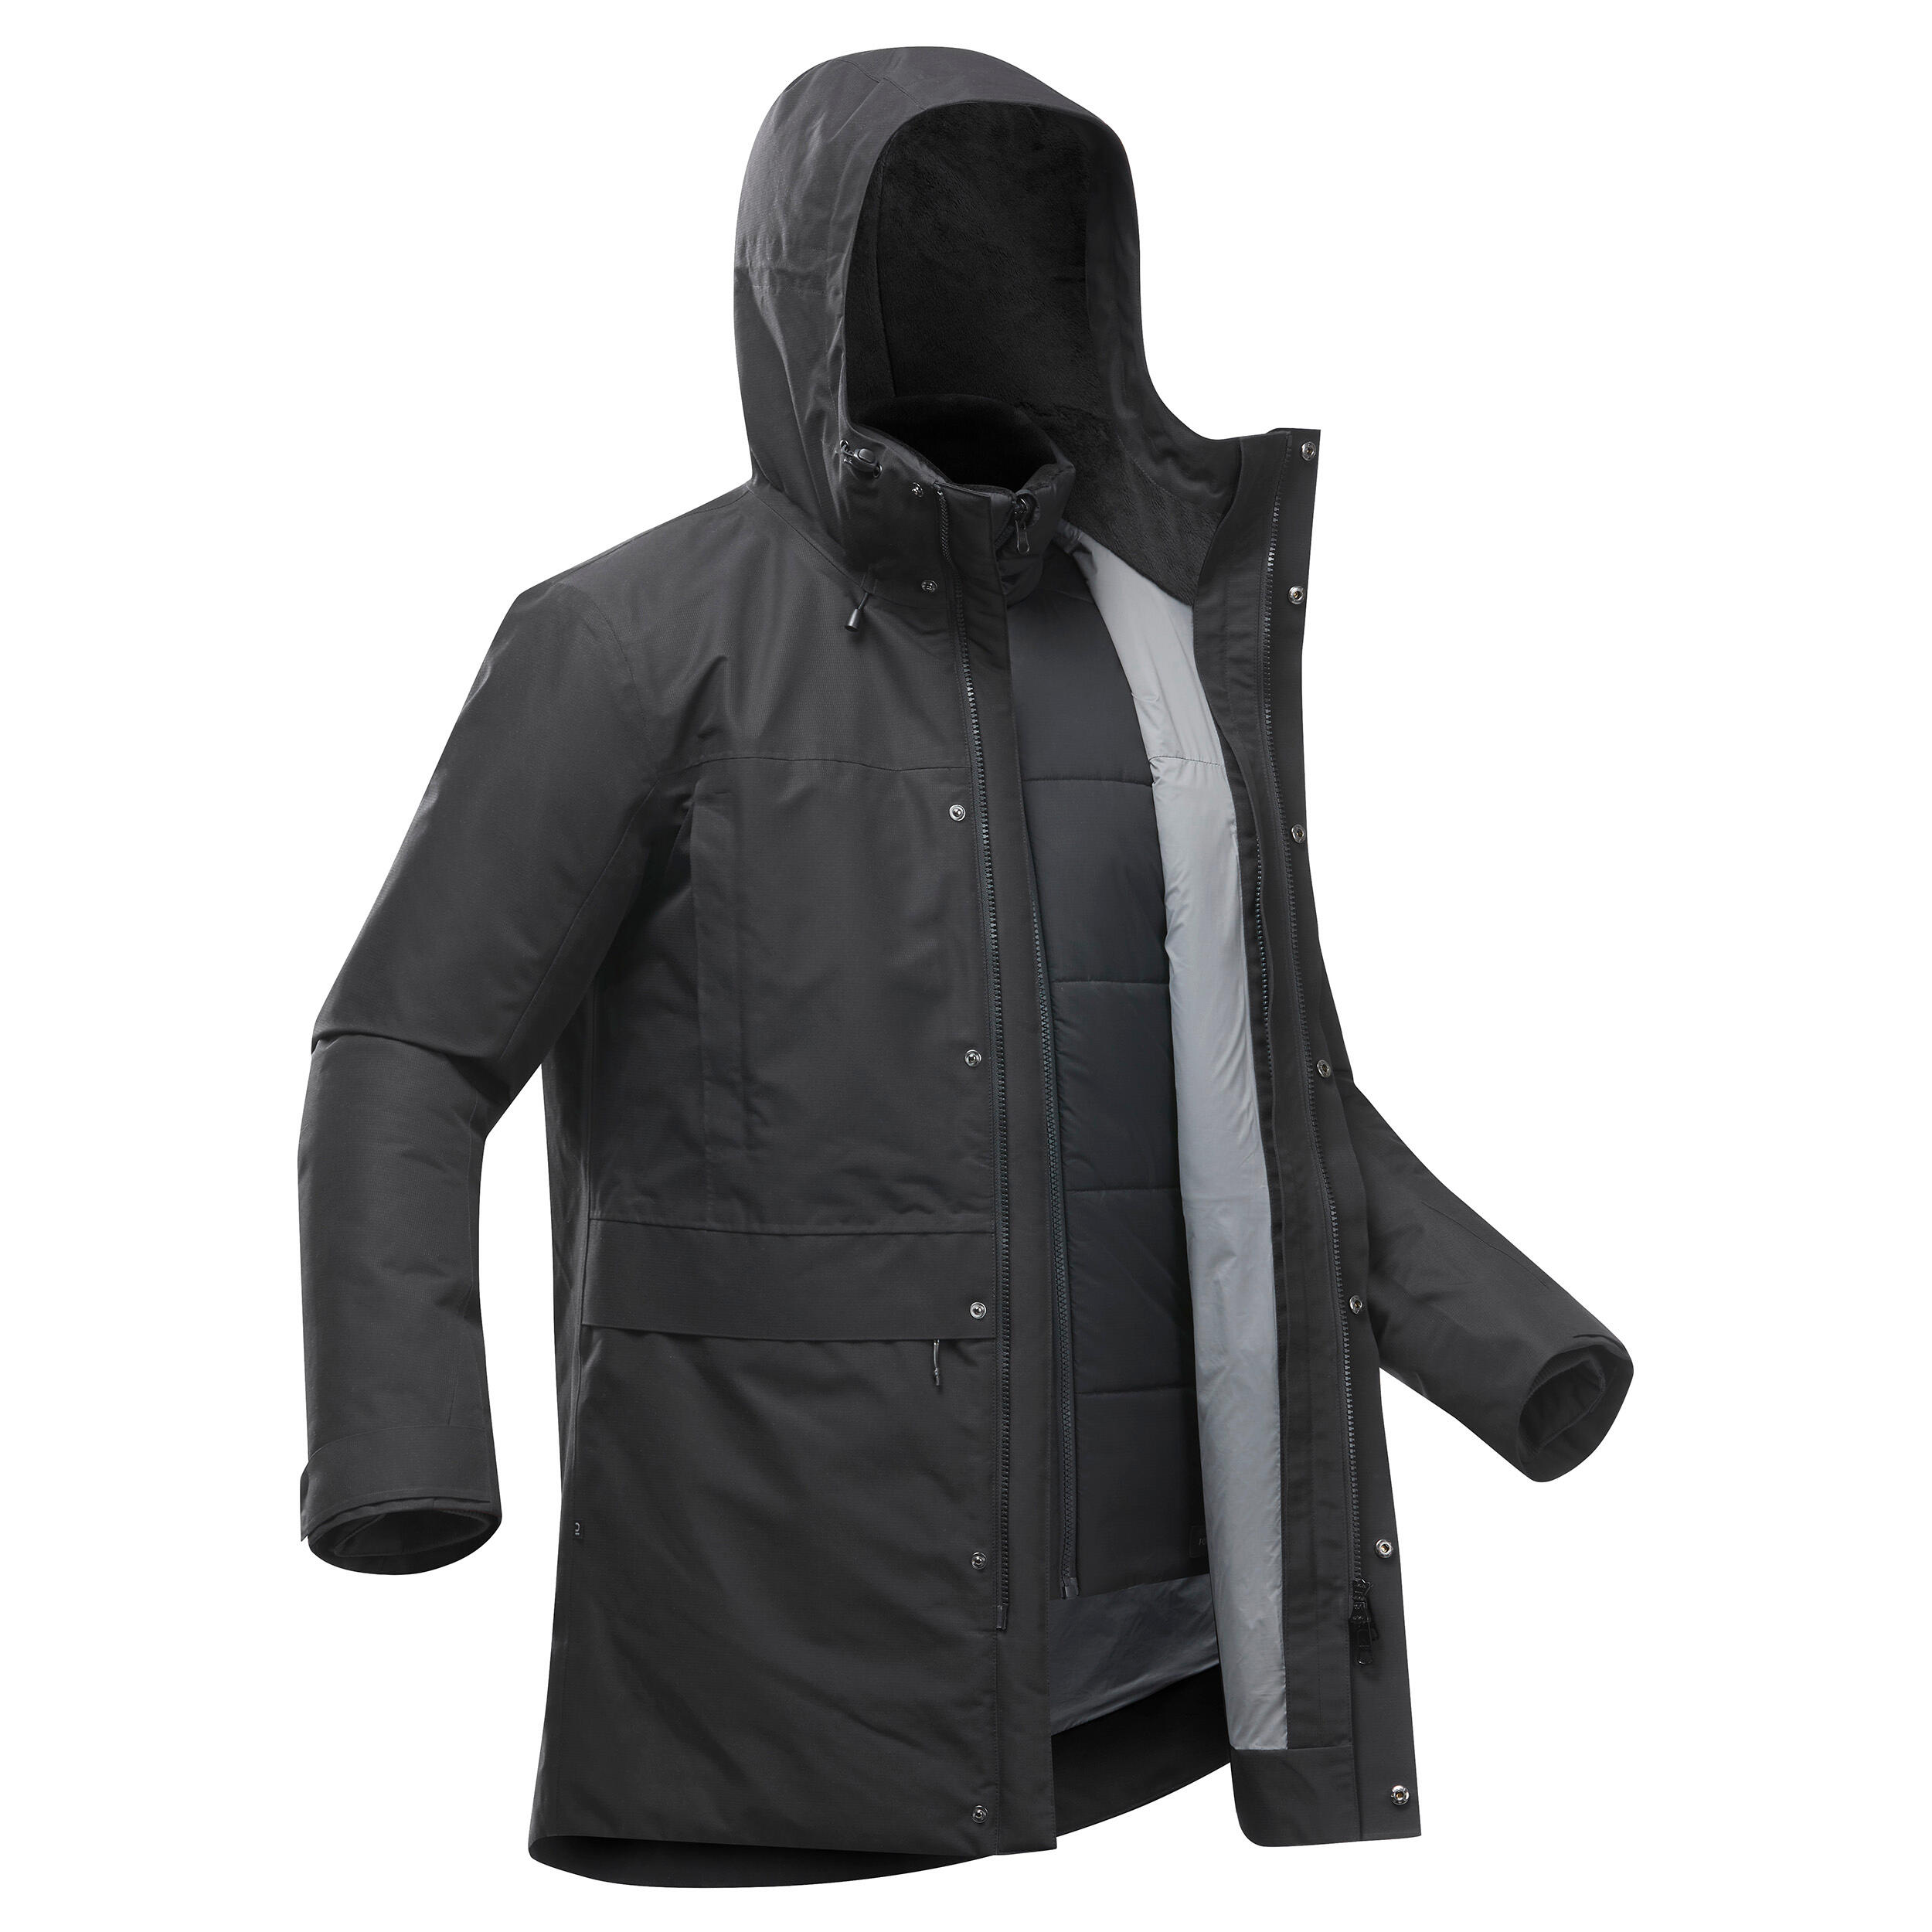 Men's 3-in-1 Waterproof Travel Trekking Jacket Travel 900 Warm -15°C - black  5/20